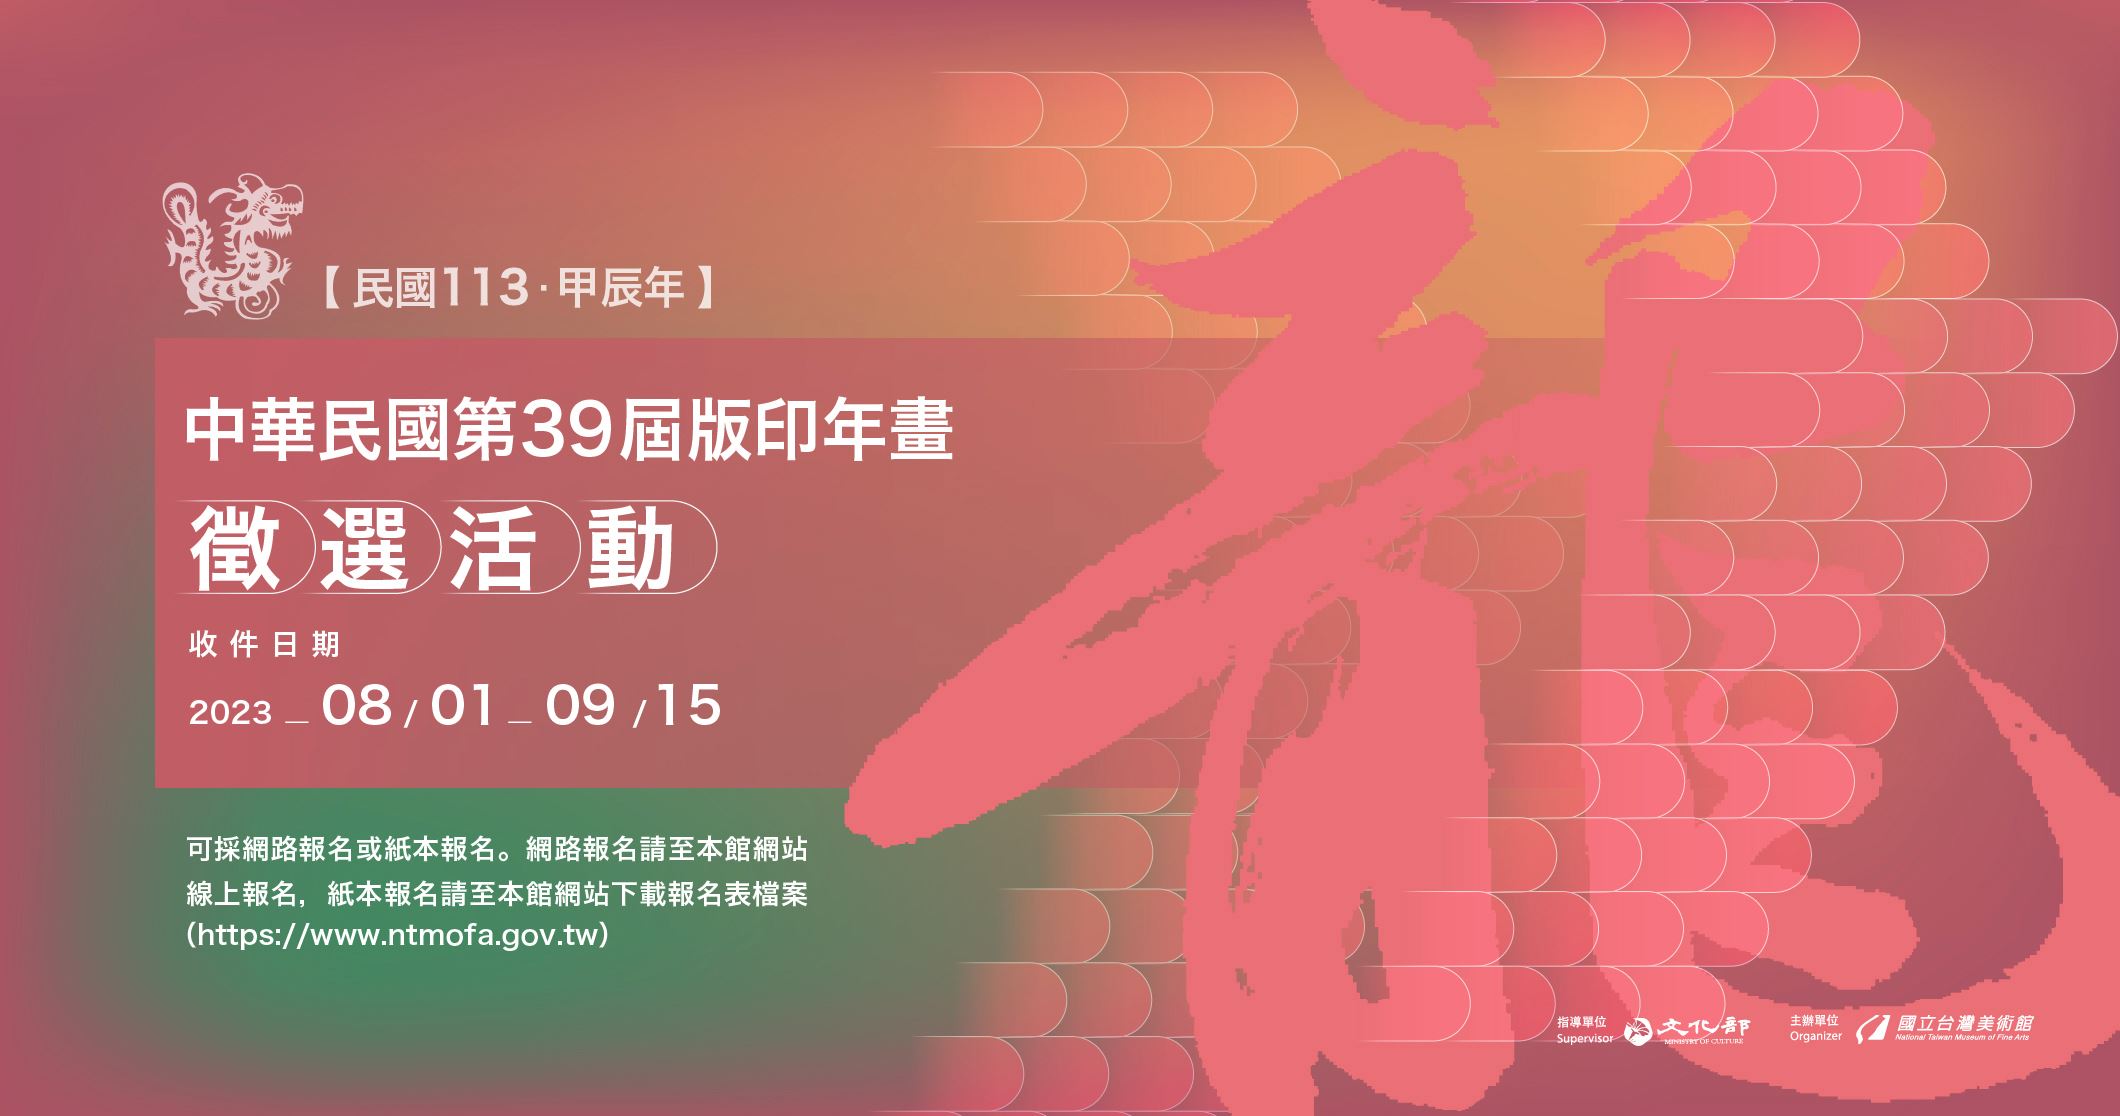 中華民國第39屆版印年畫徵選活動